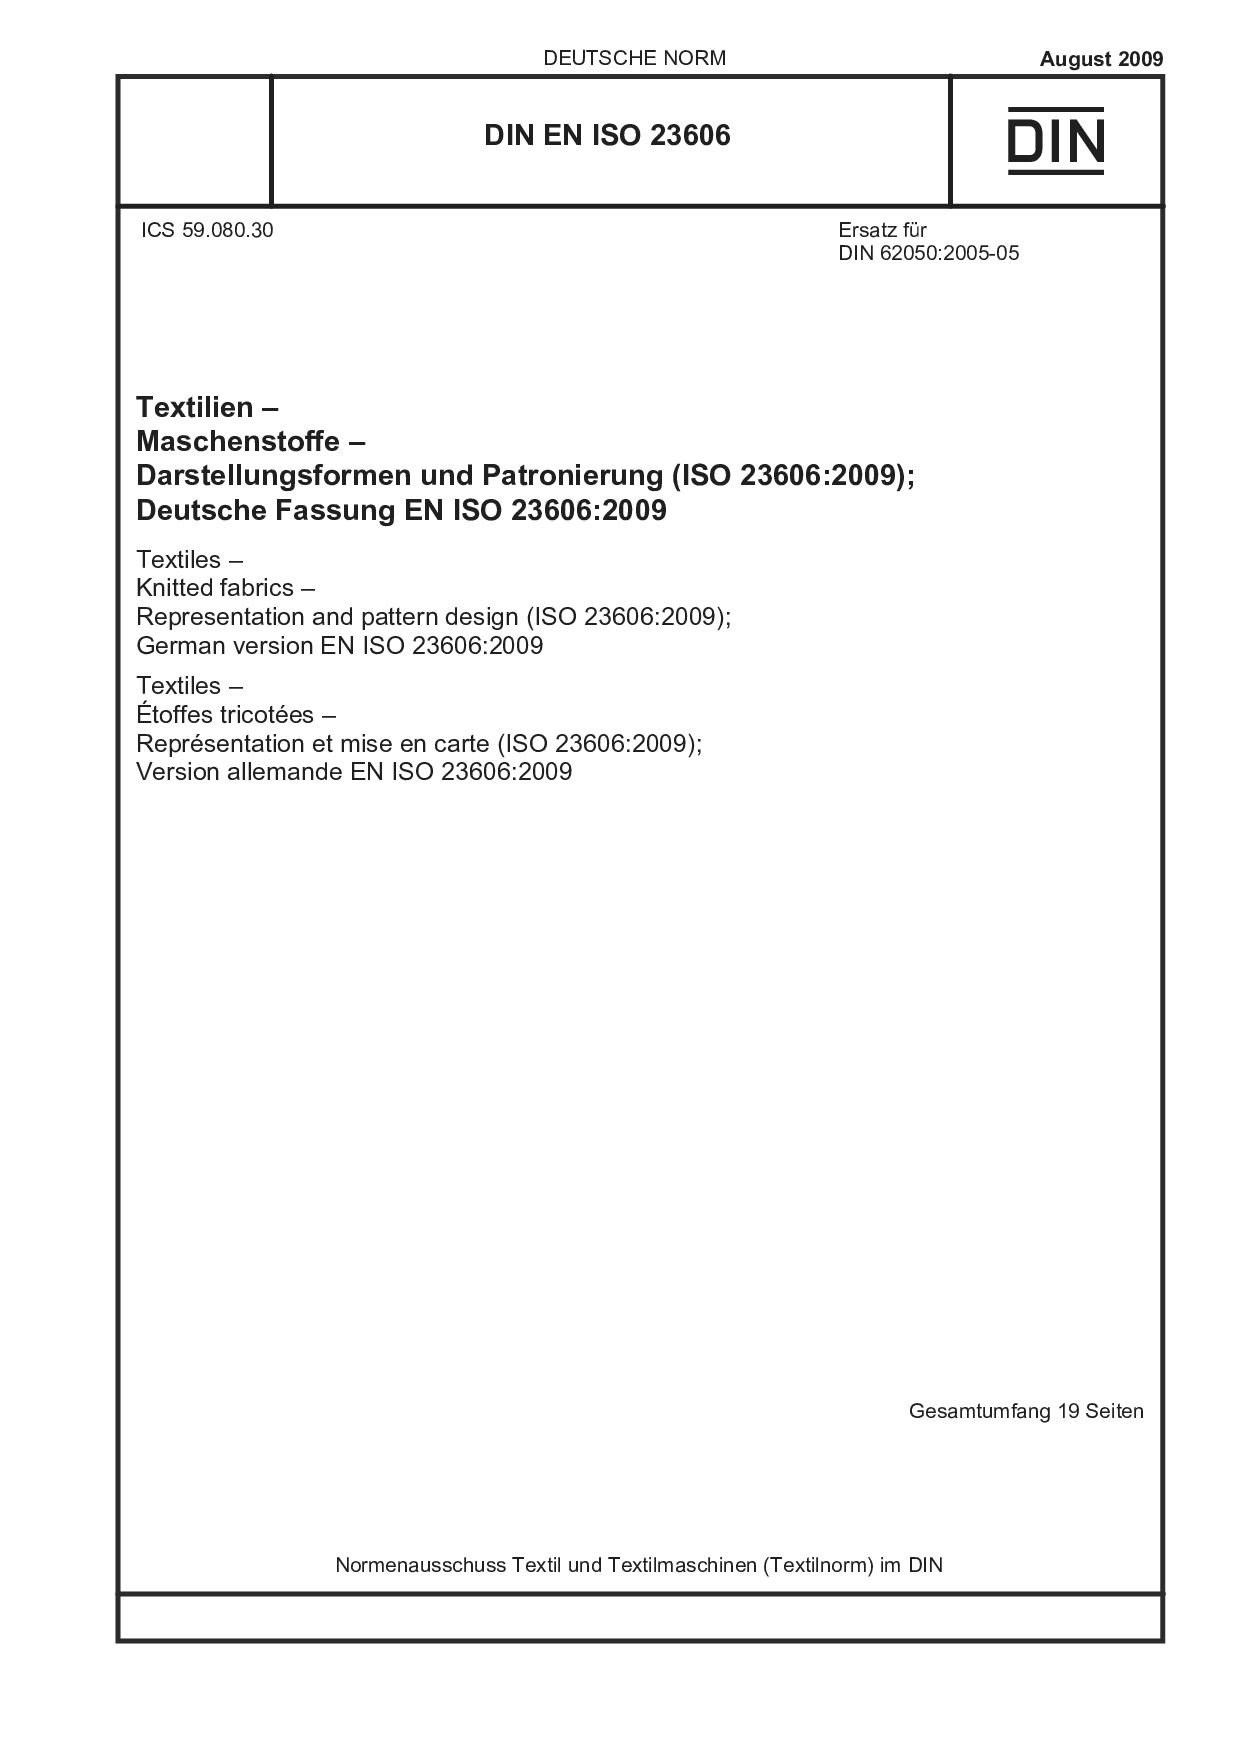 DIN EN ISO 23606:2009